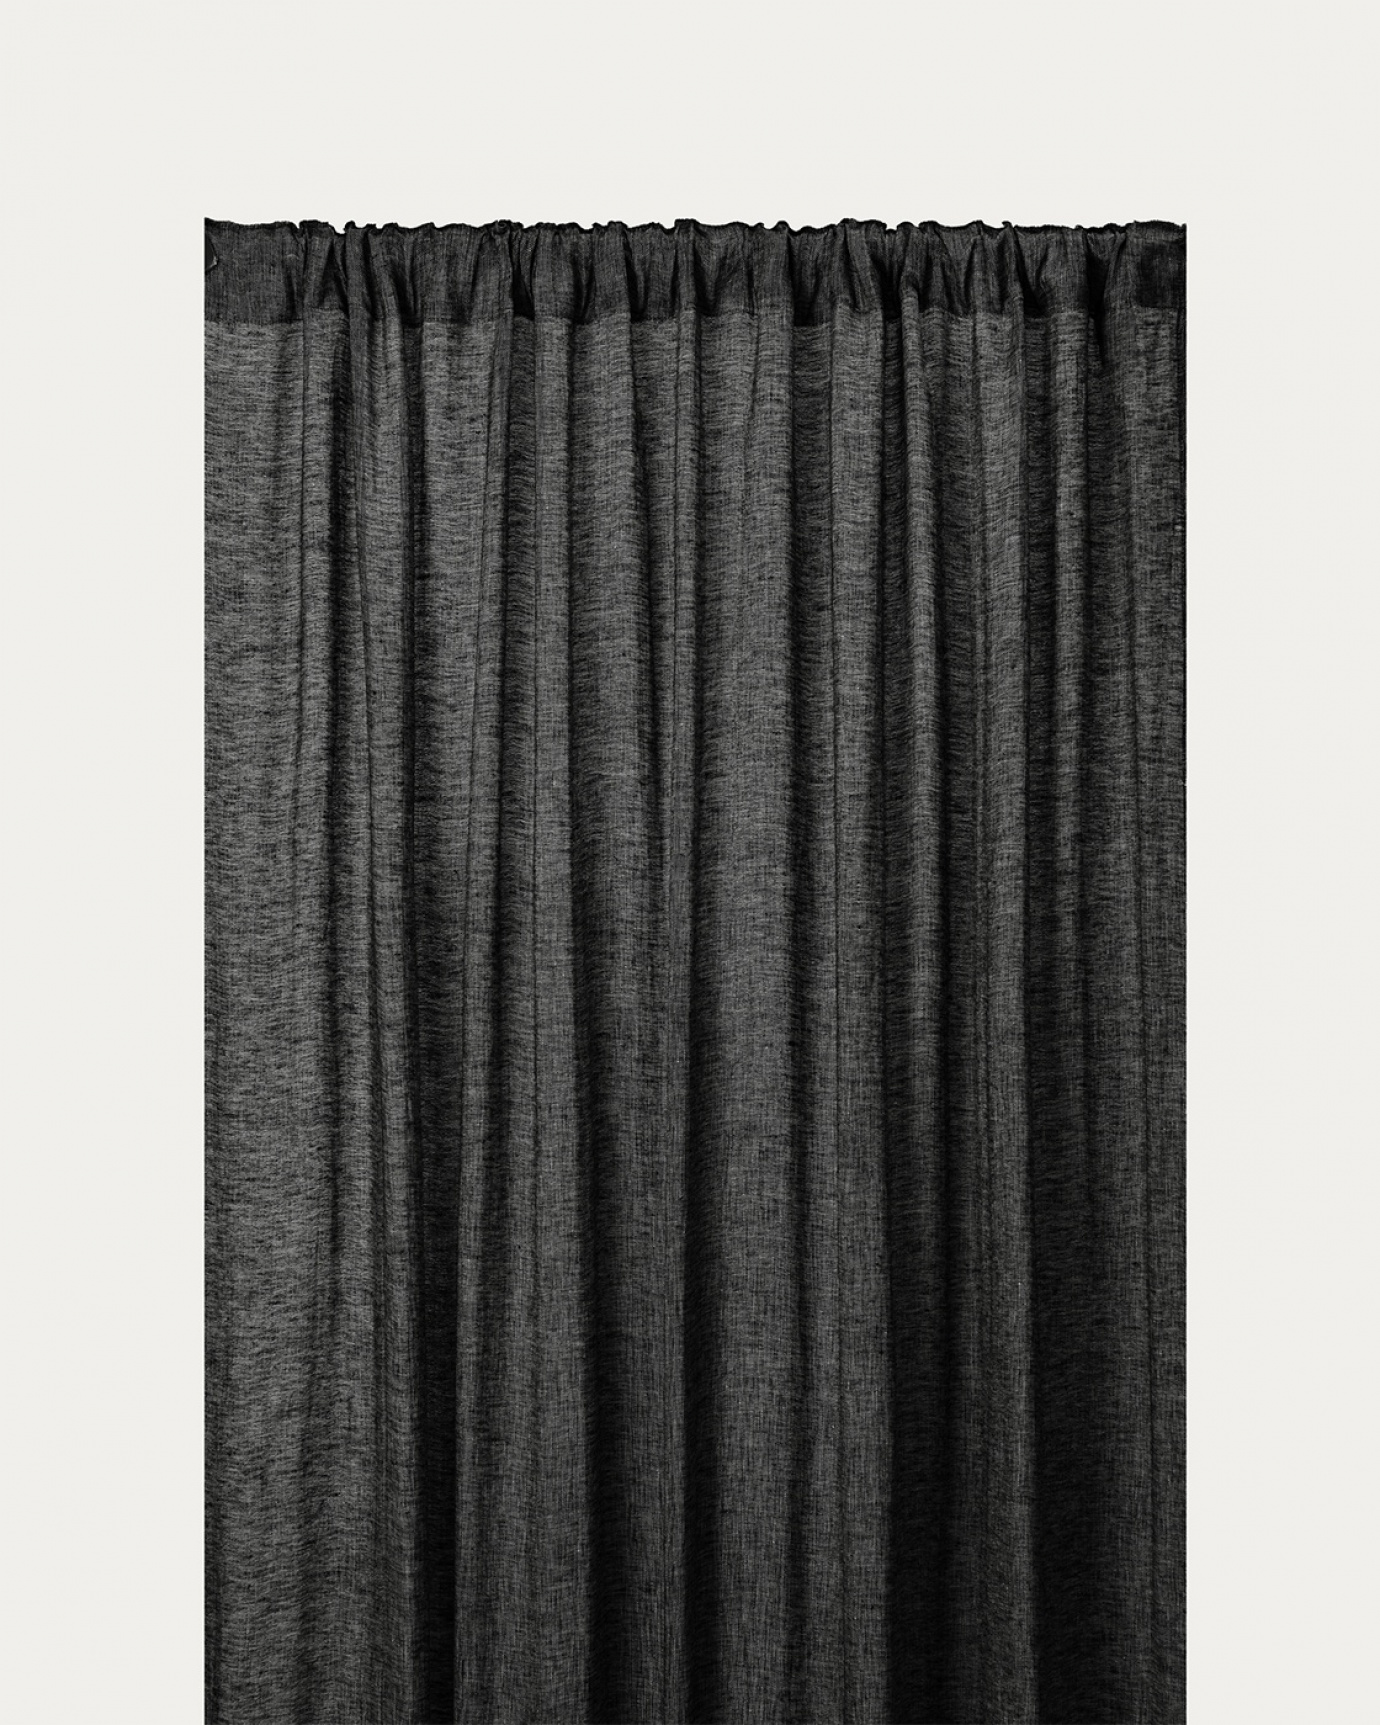 Produktbild schwarz INTERMEZZO Gardine aus reinem Leinen mit Fertigfalten von LINUM DESIGN. Größe 140x290 cm und in 2er-Pack verkauft.